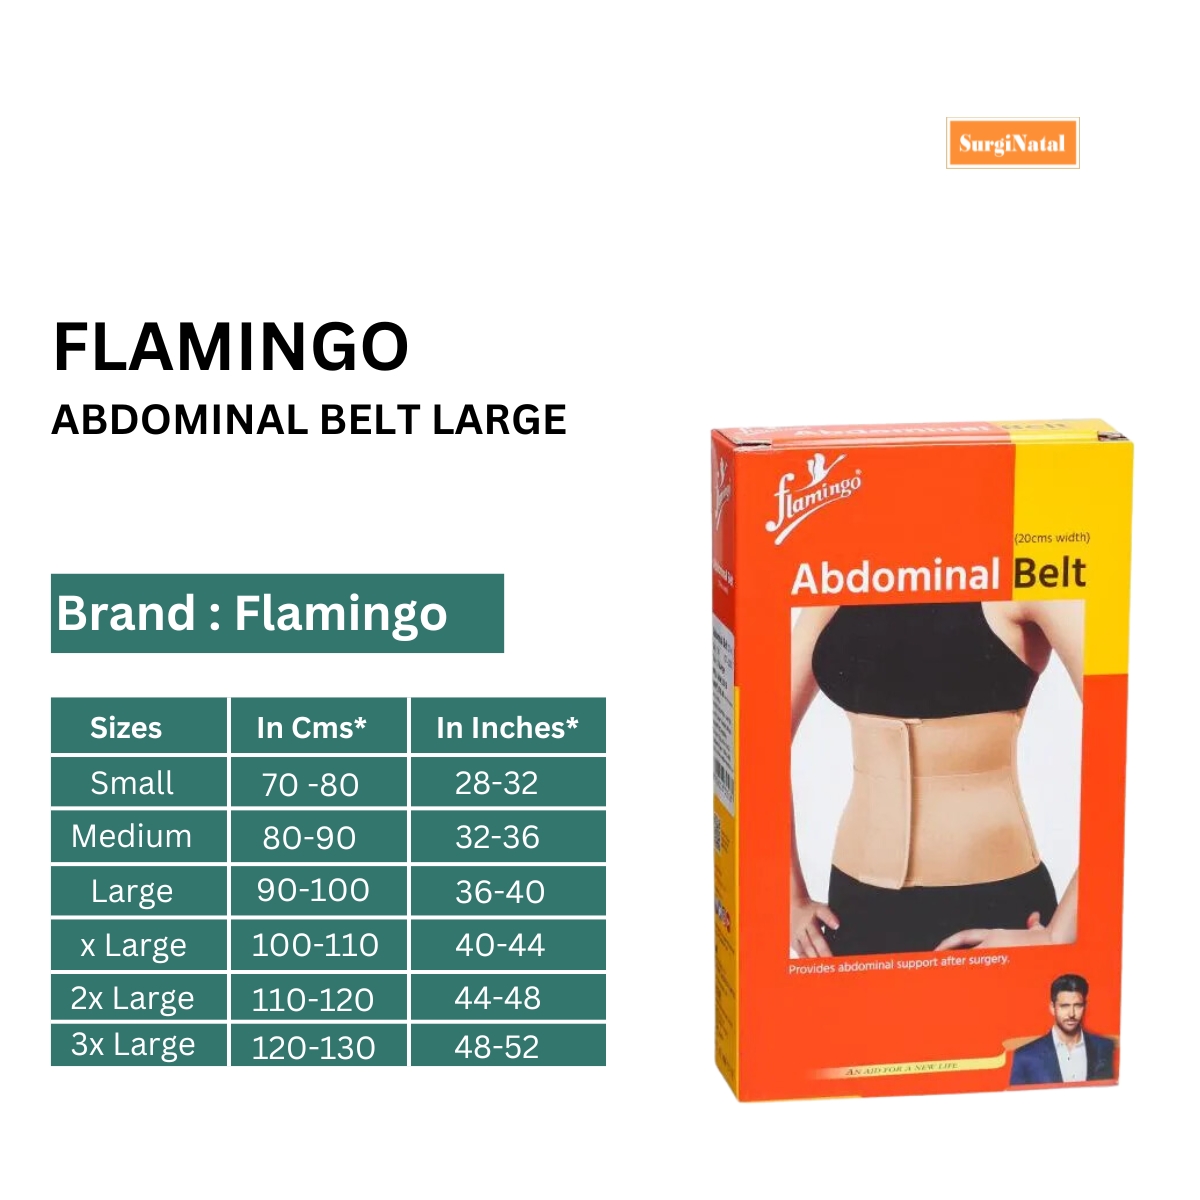 flamingo abdominal belt large